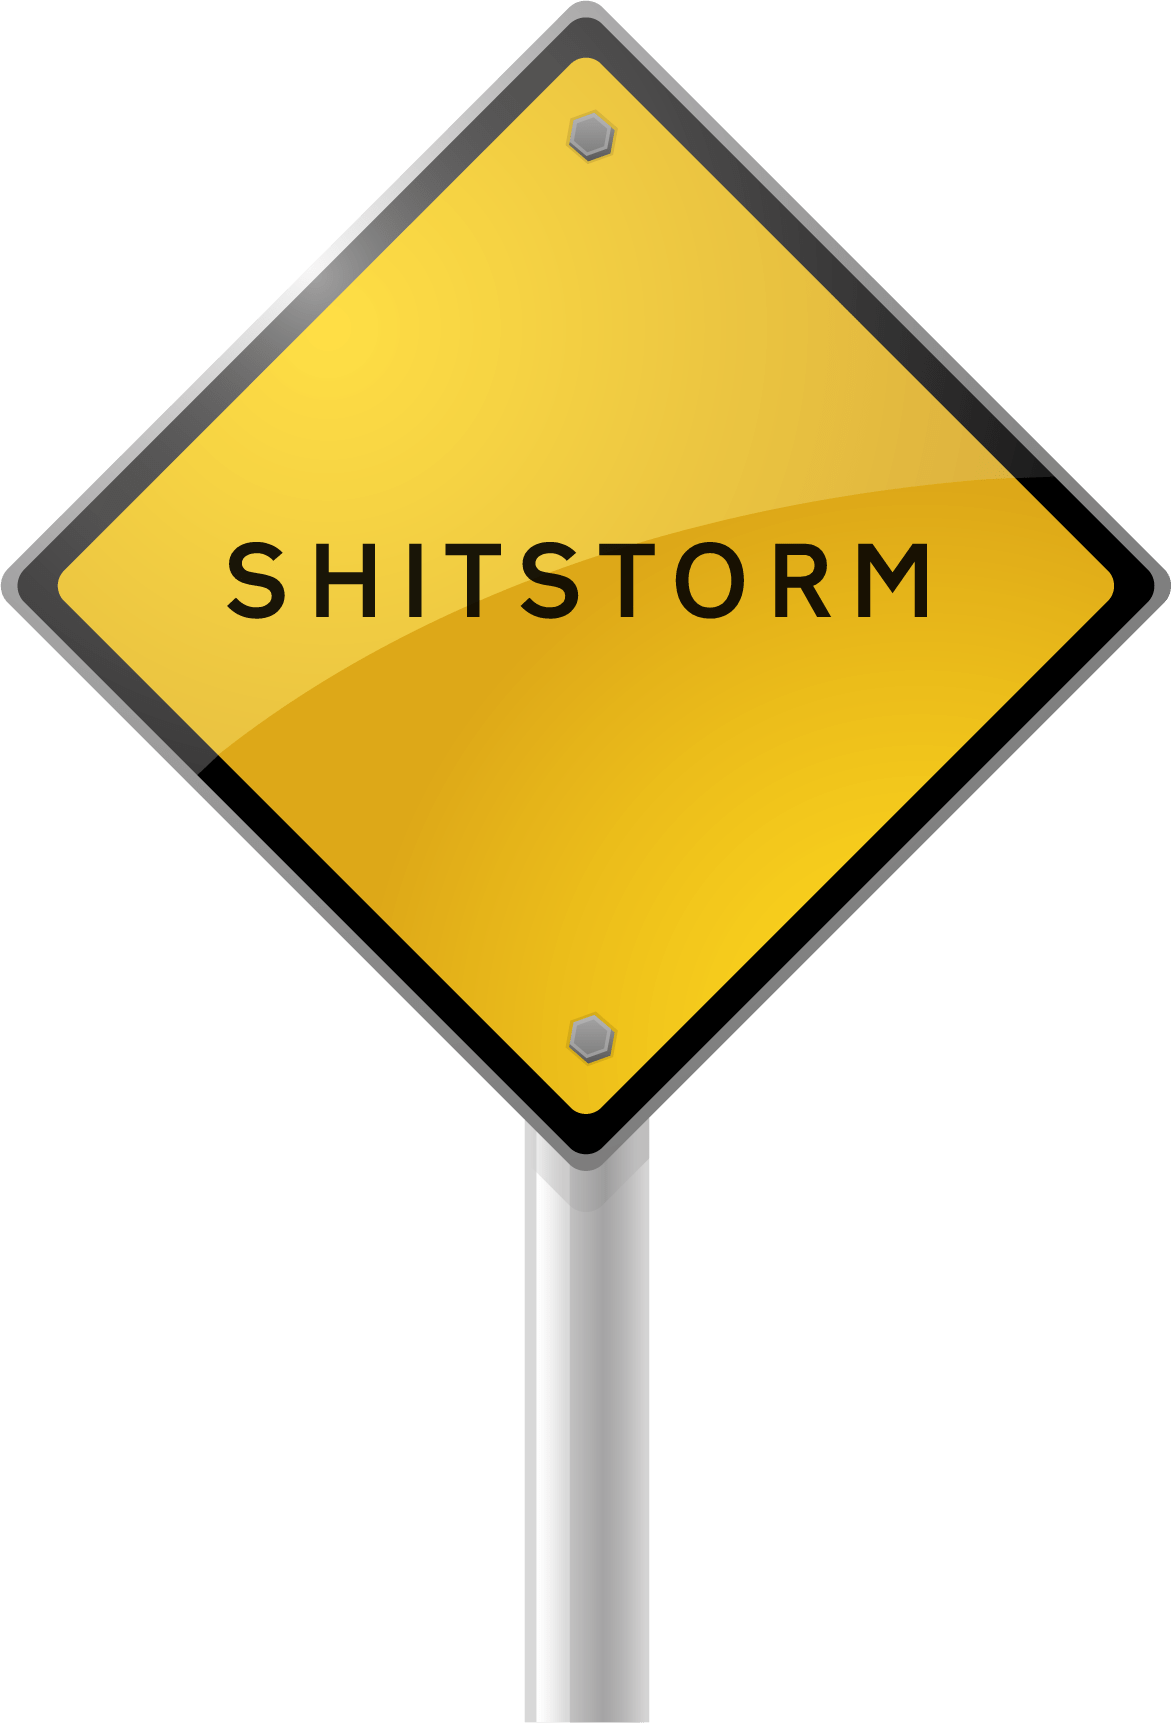 Hvad er en shitstorm? (definition) og hvordan håndterer du den, hvis du bliver ramt af en shitstorm